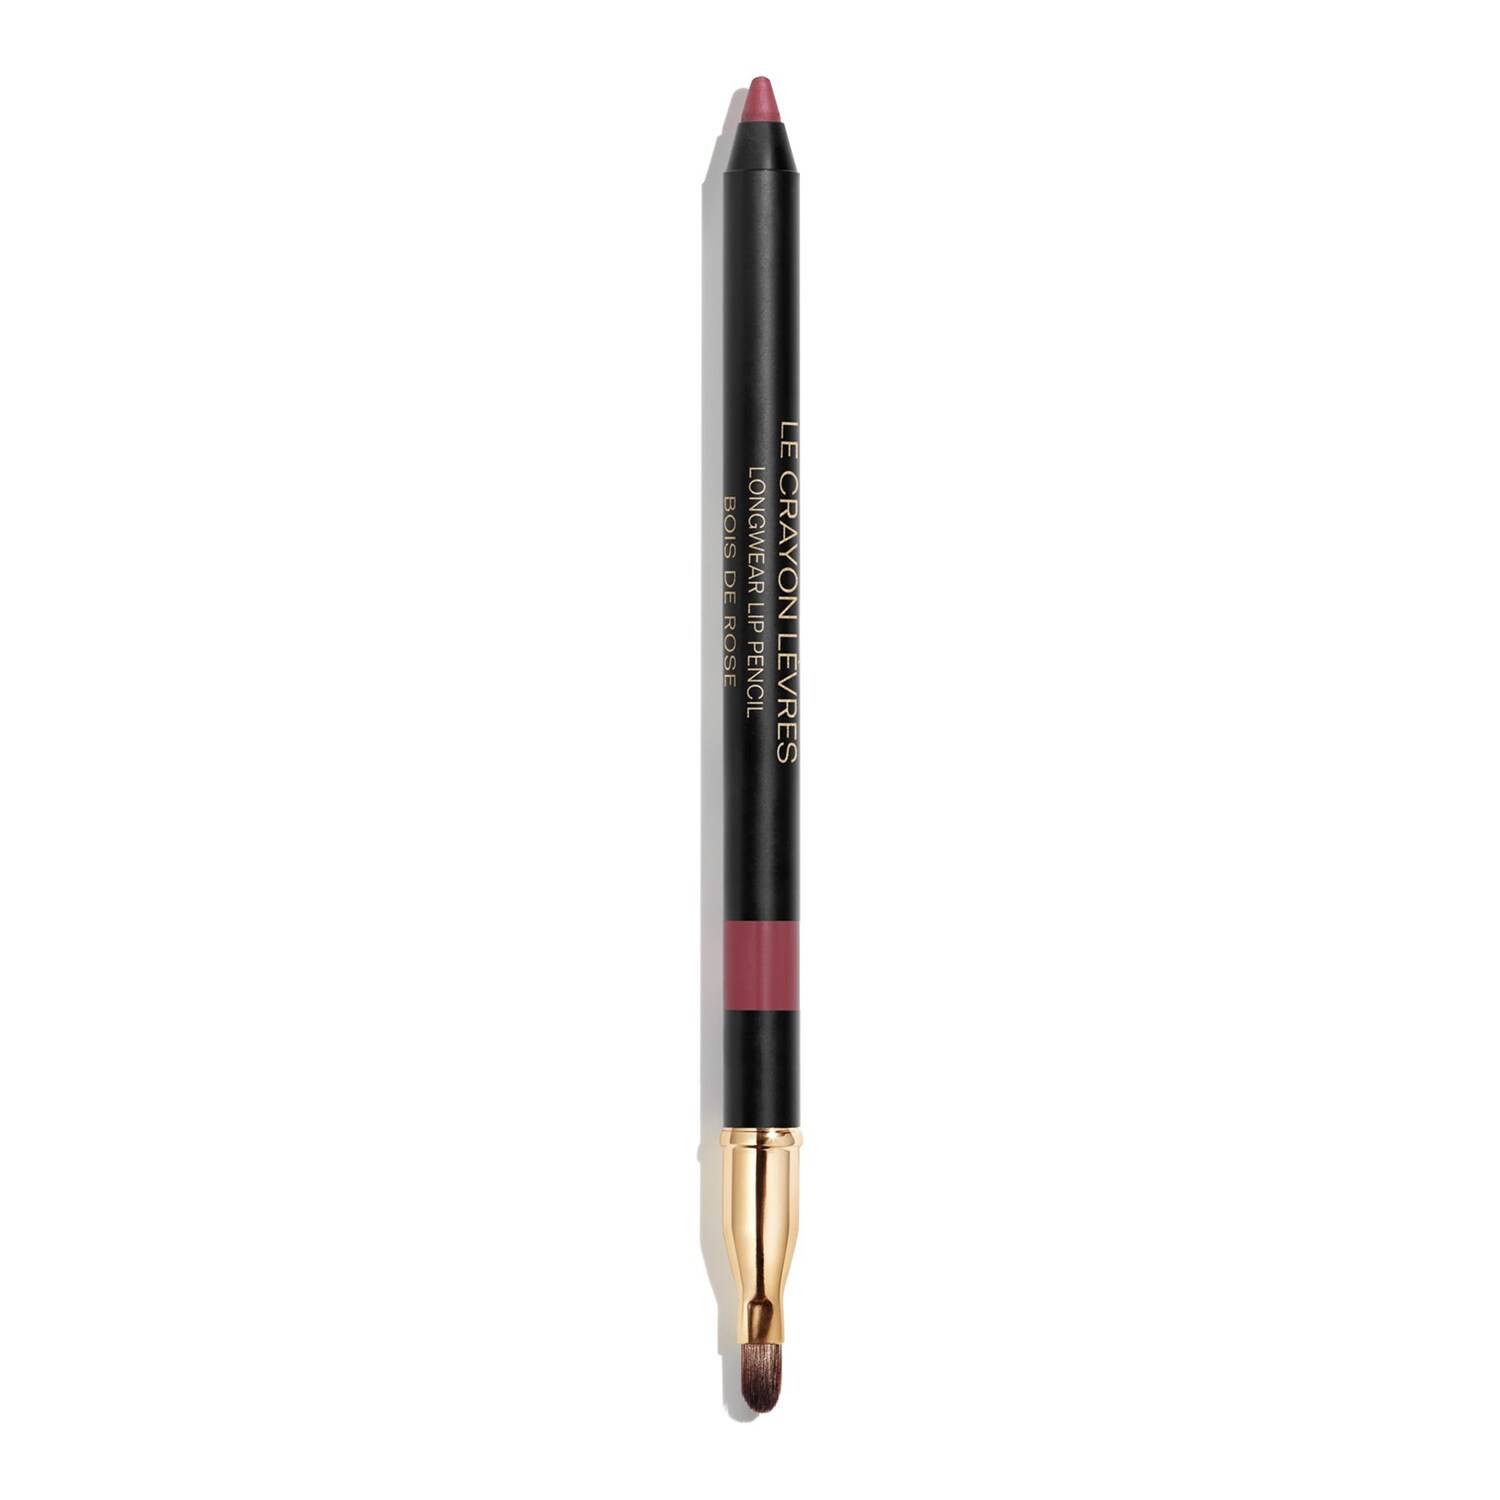 Chanel Le Crayon Levres - Longwear Lip Pencil 172 Bois De Rose